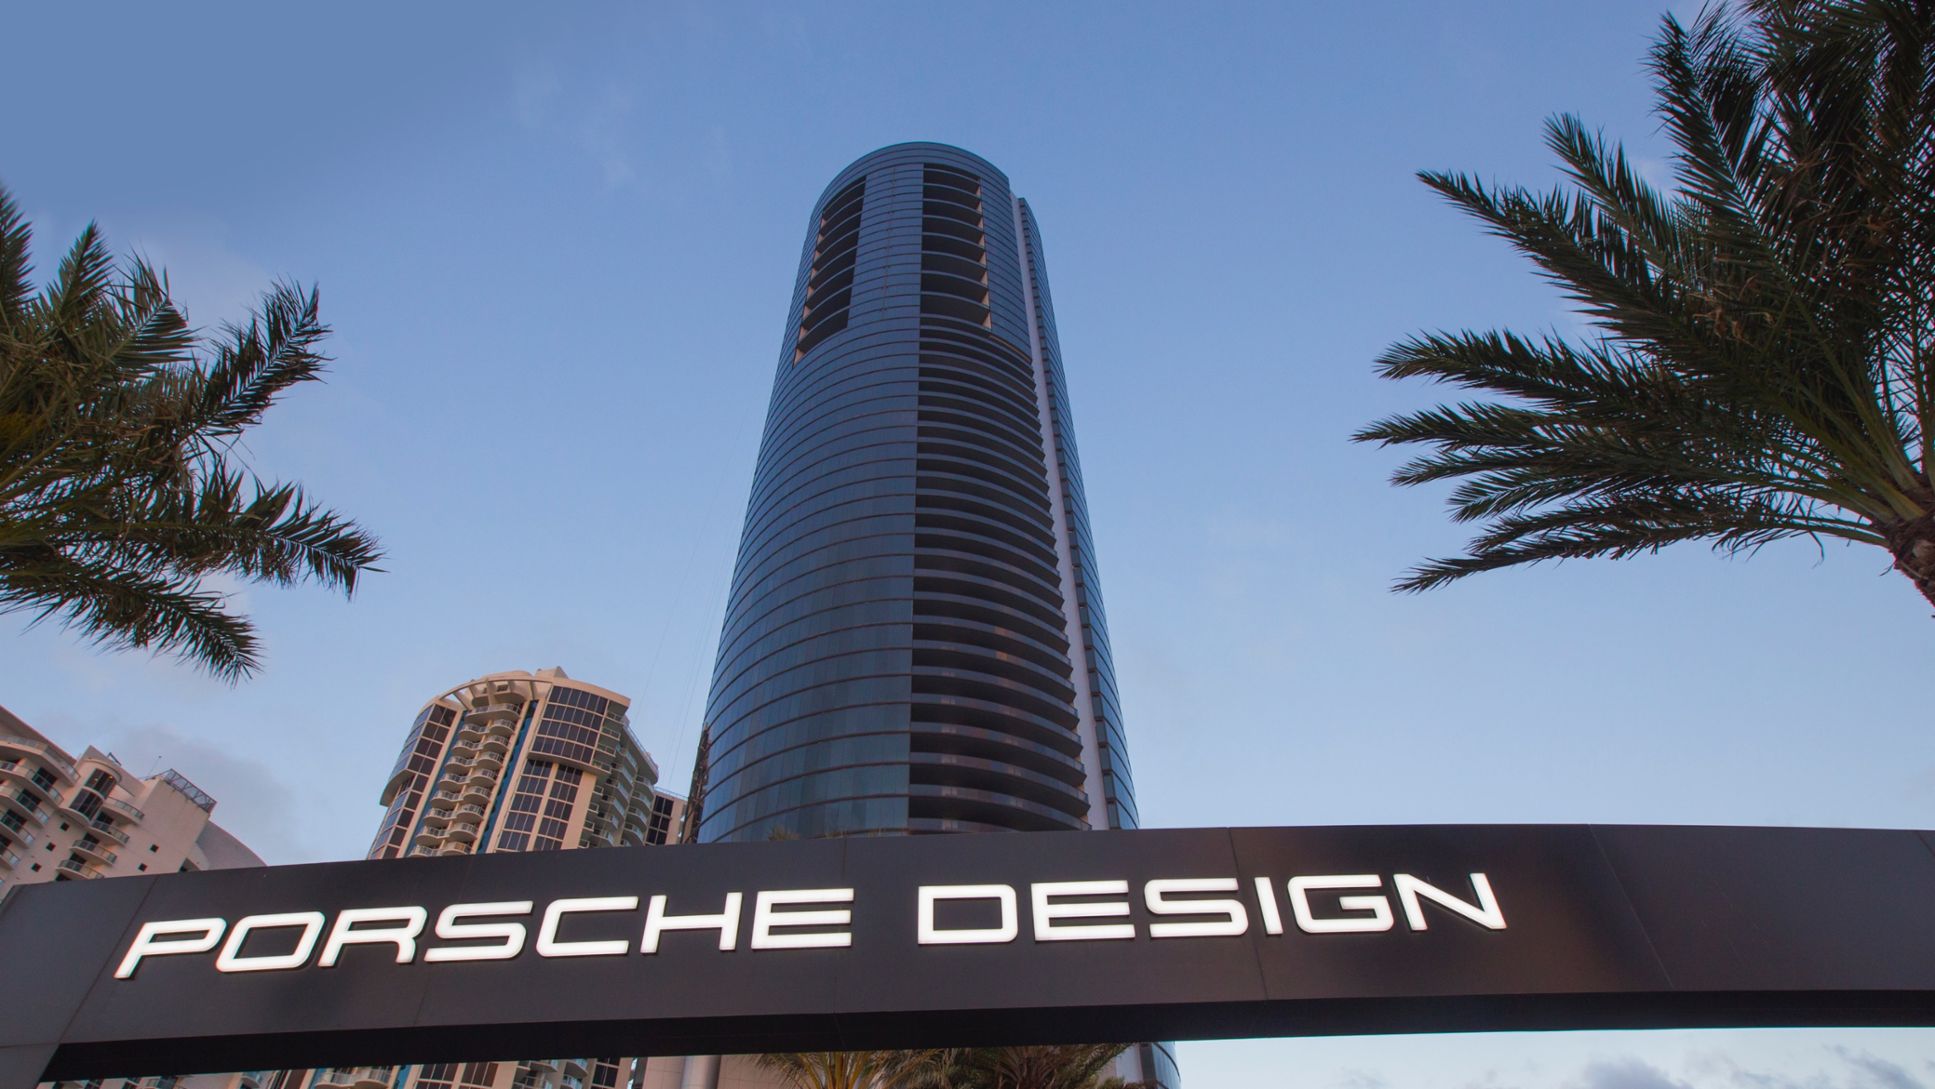 Porsche Design Tower Miami, Florida, 2017, Porsche AG